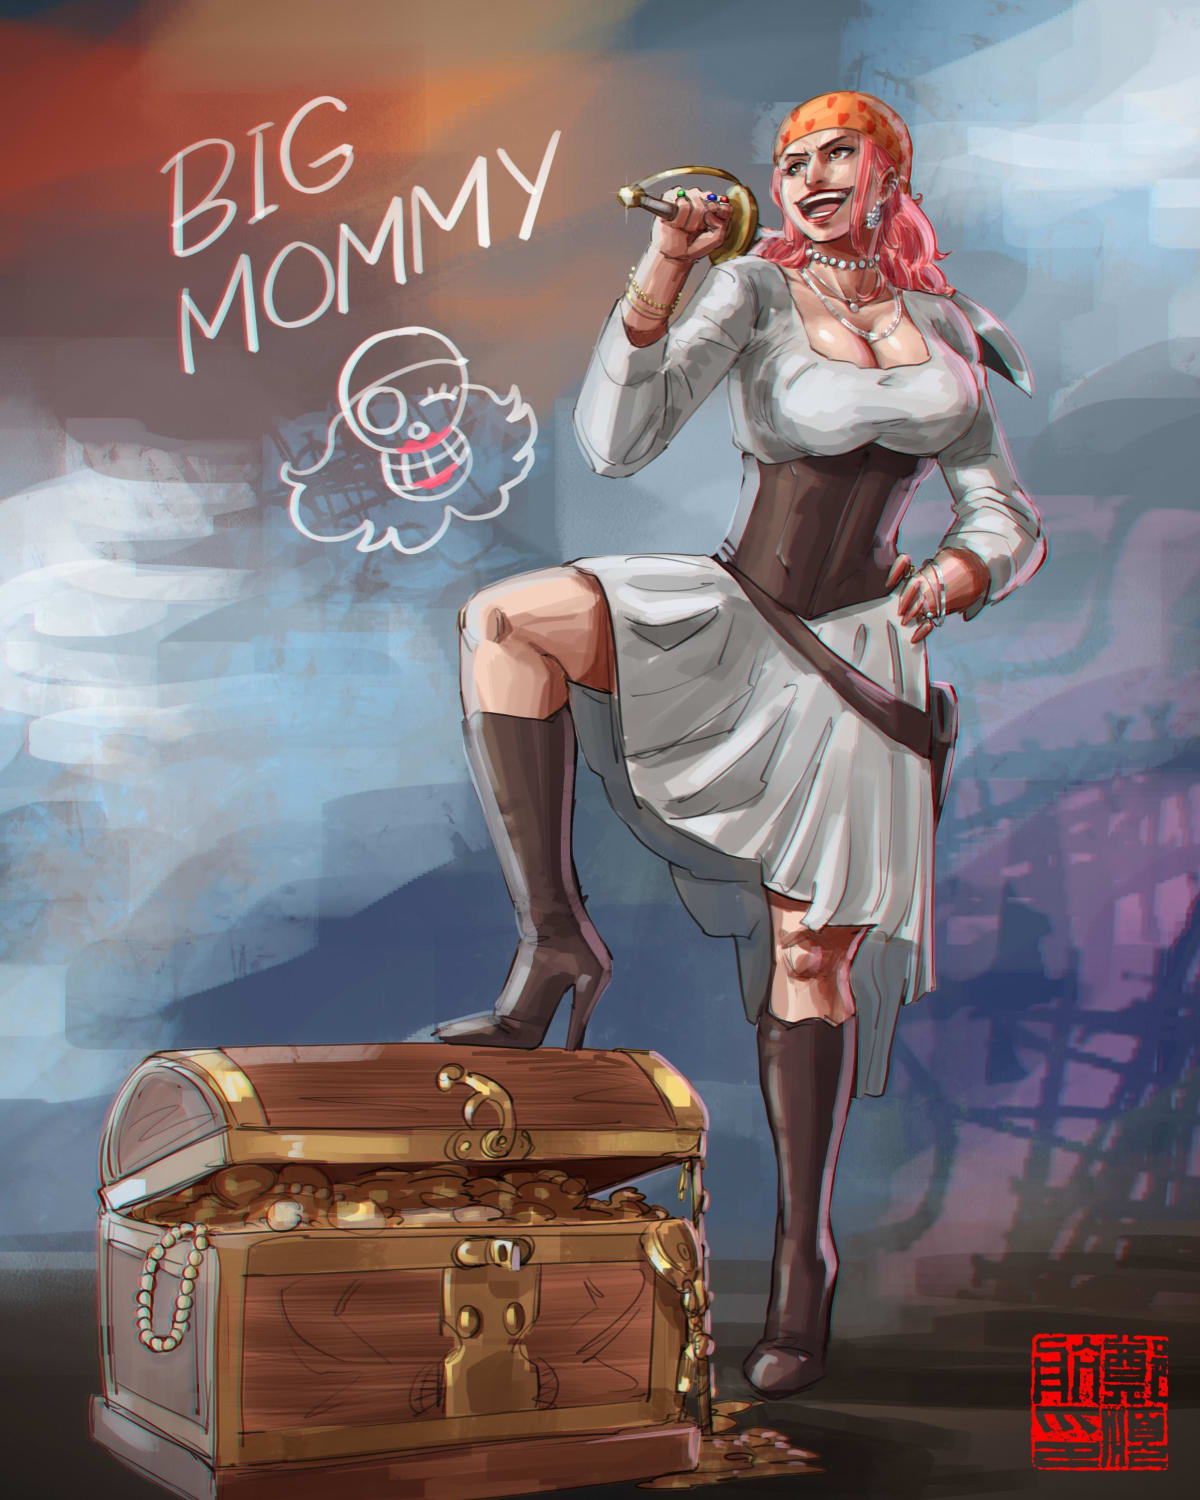 BIG MOMMY